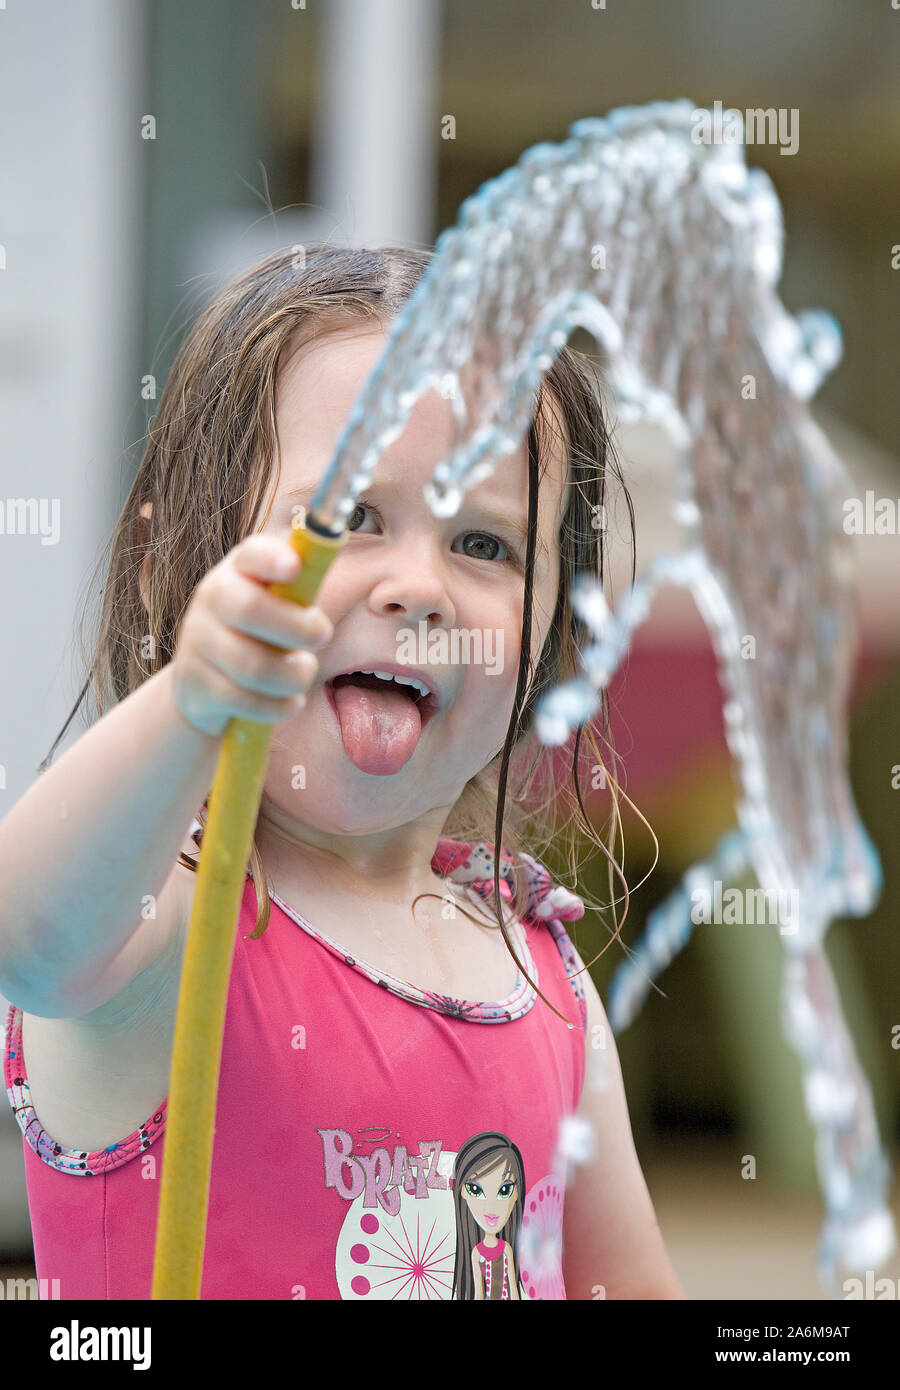 Niña de 4 años de edad con la lengua fuera la celebración de manguera con agua fluyendo en el aire Foto de stock